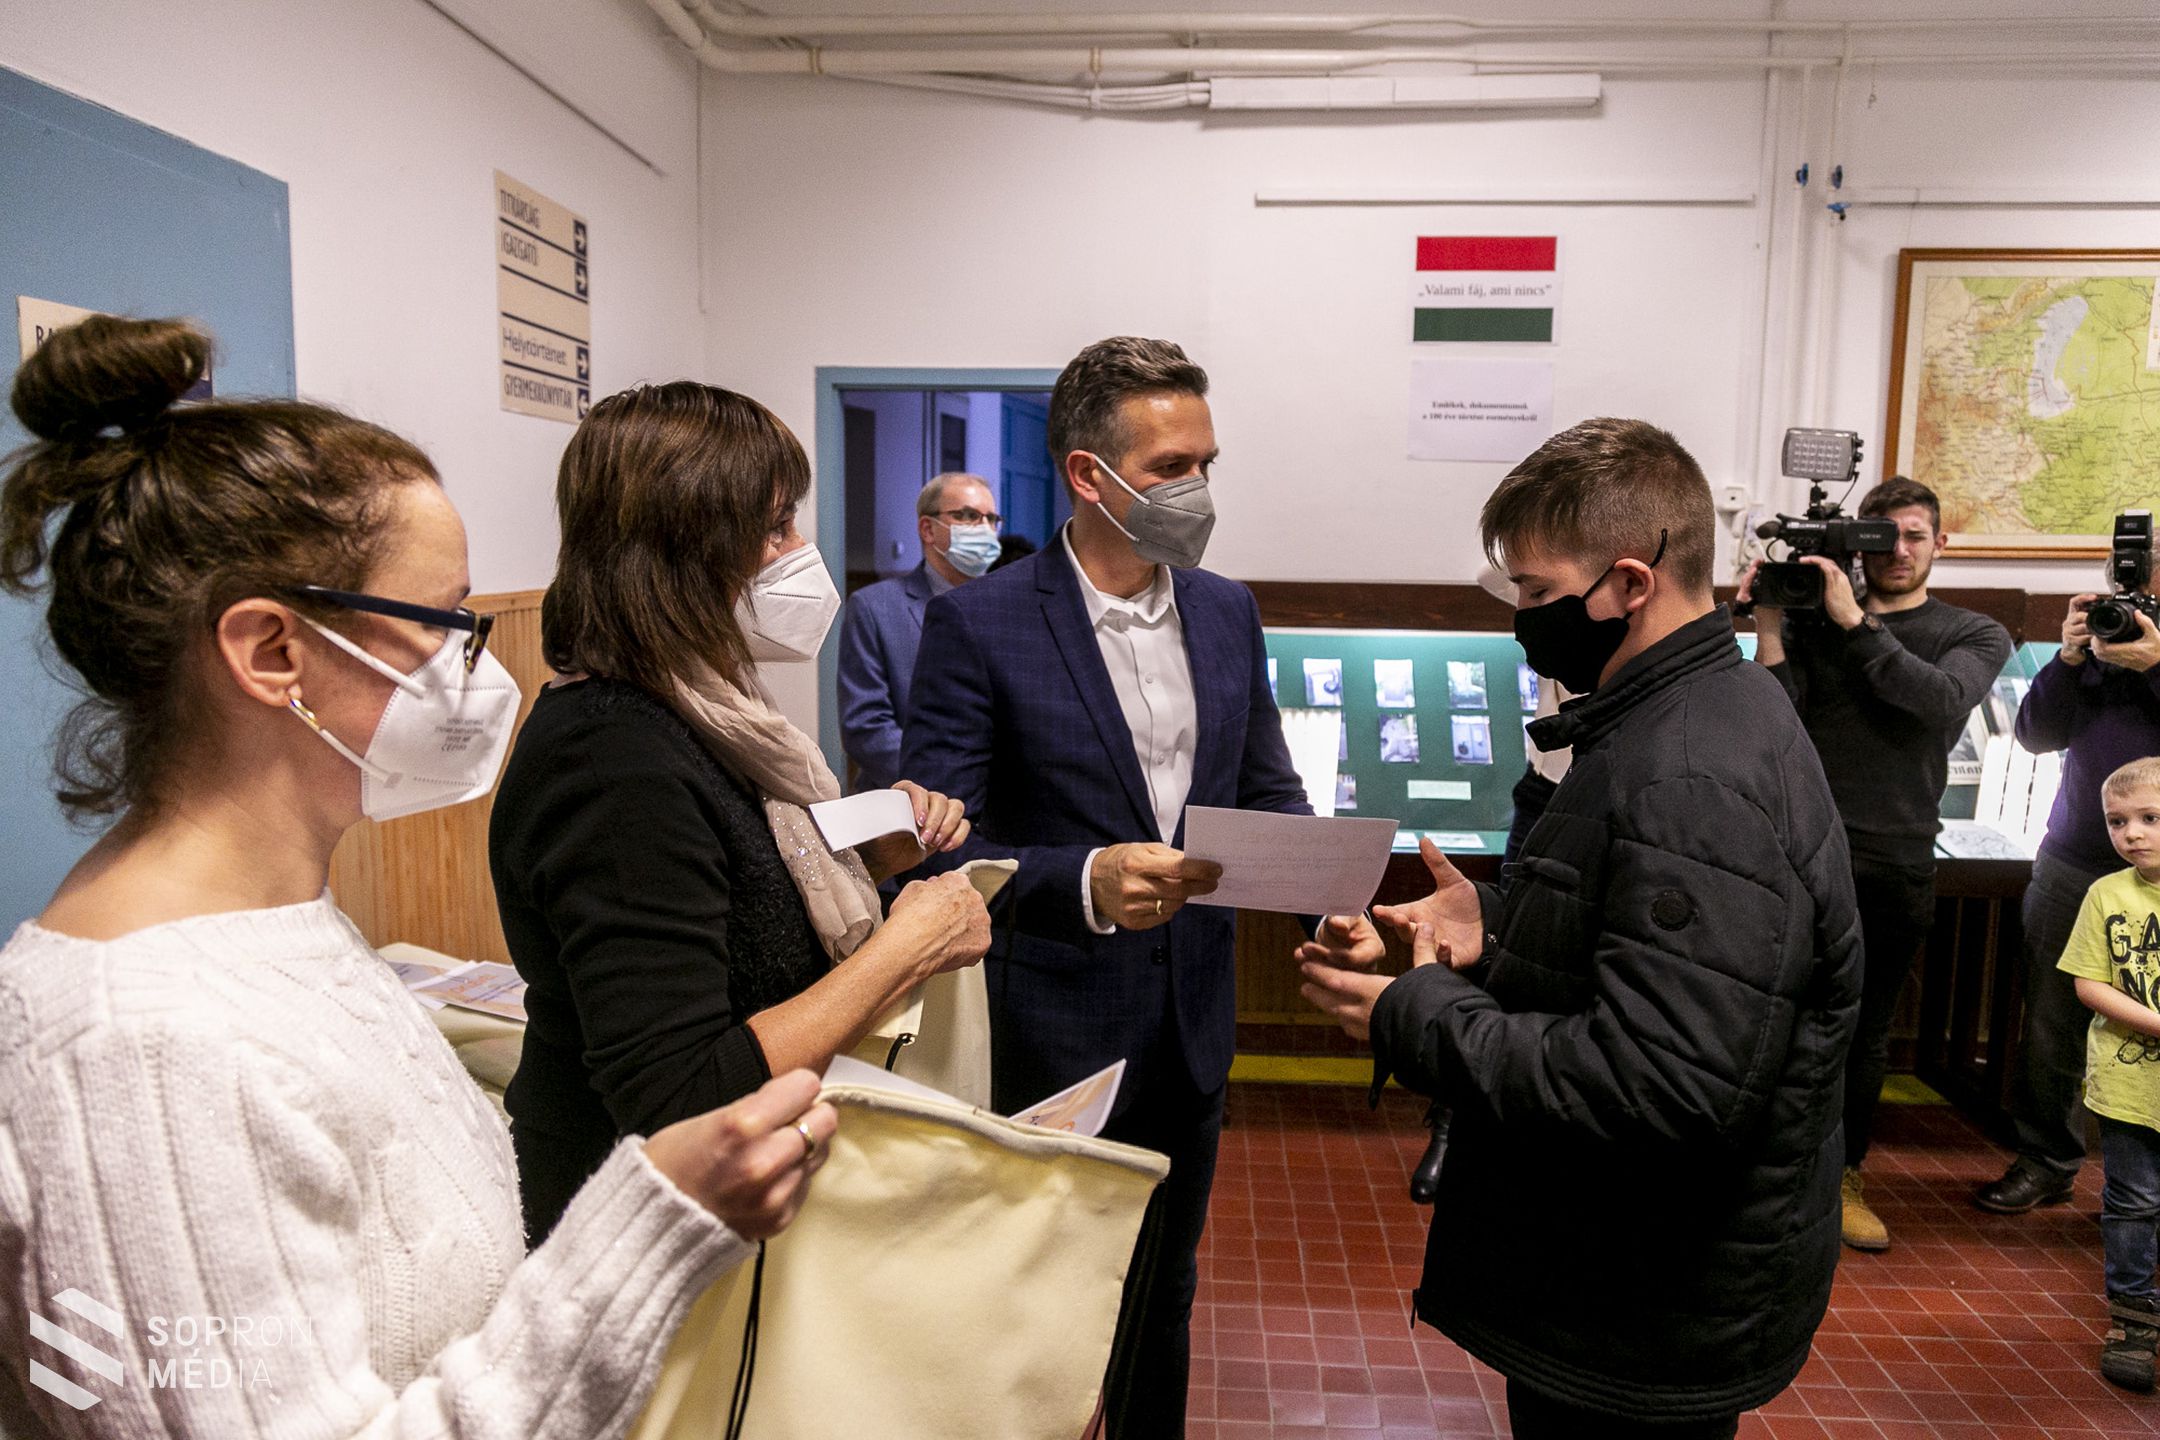 Képeslapok és korabeli dokumentumok idézik meg a népszavazás kori Sopront